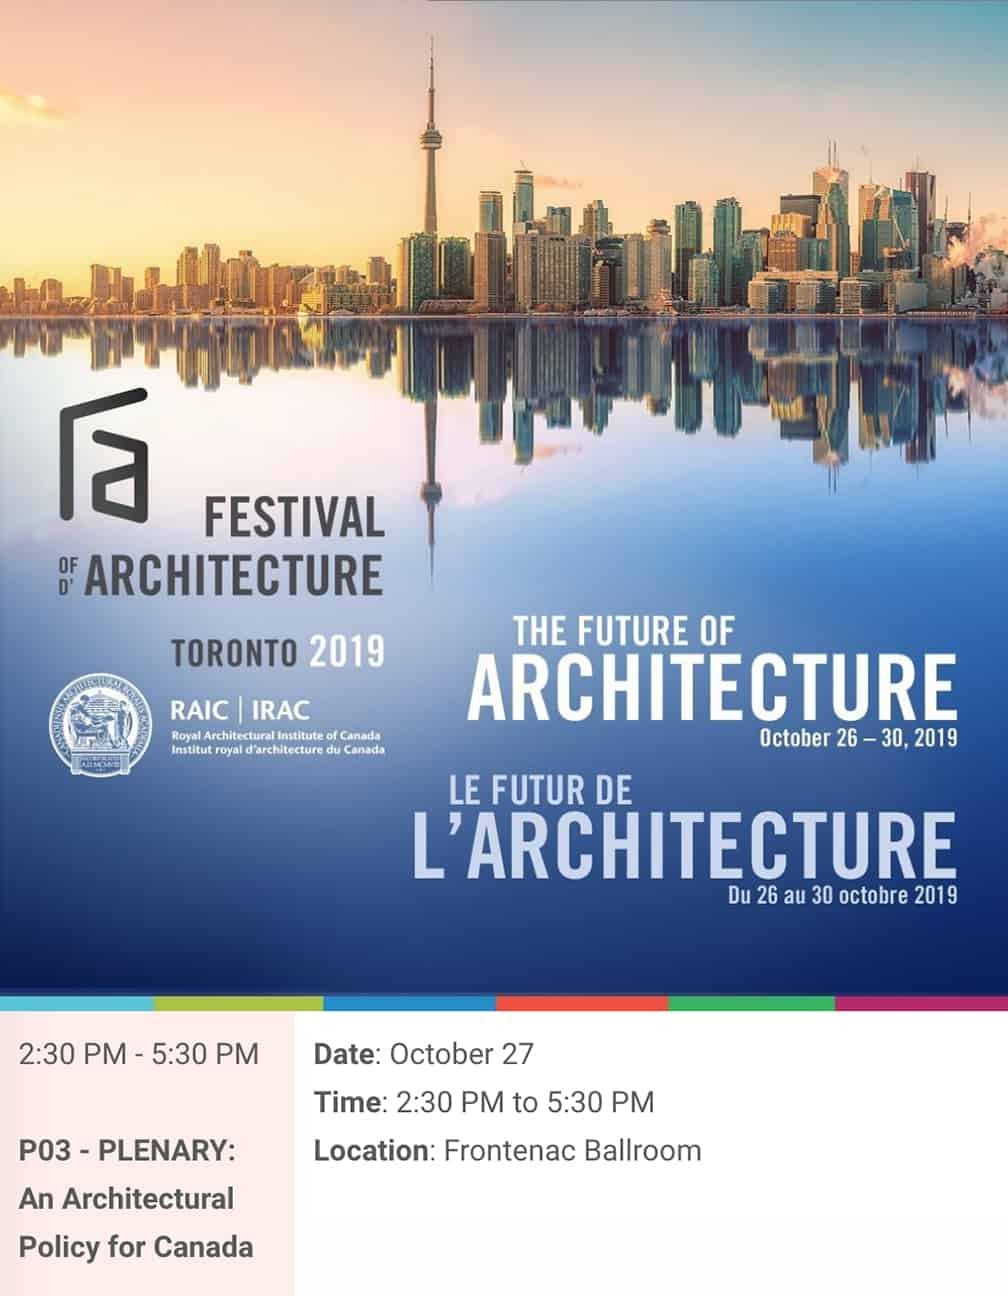 RAIC Festival, October 26-30, 2019